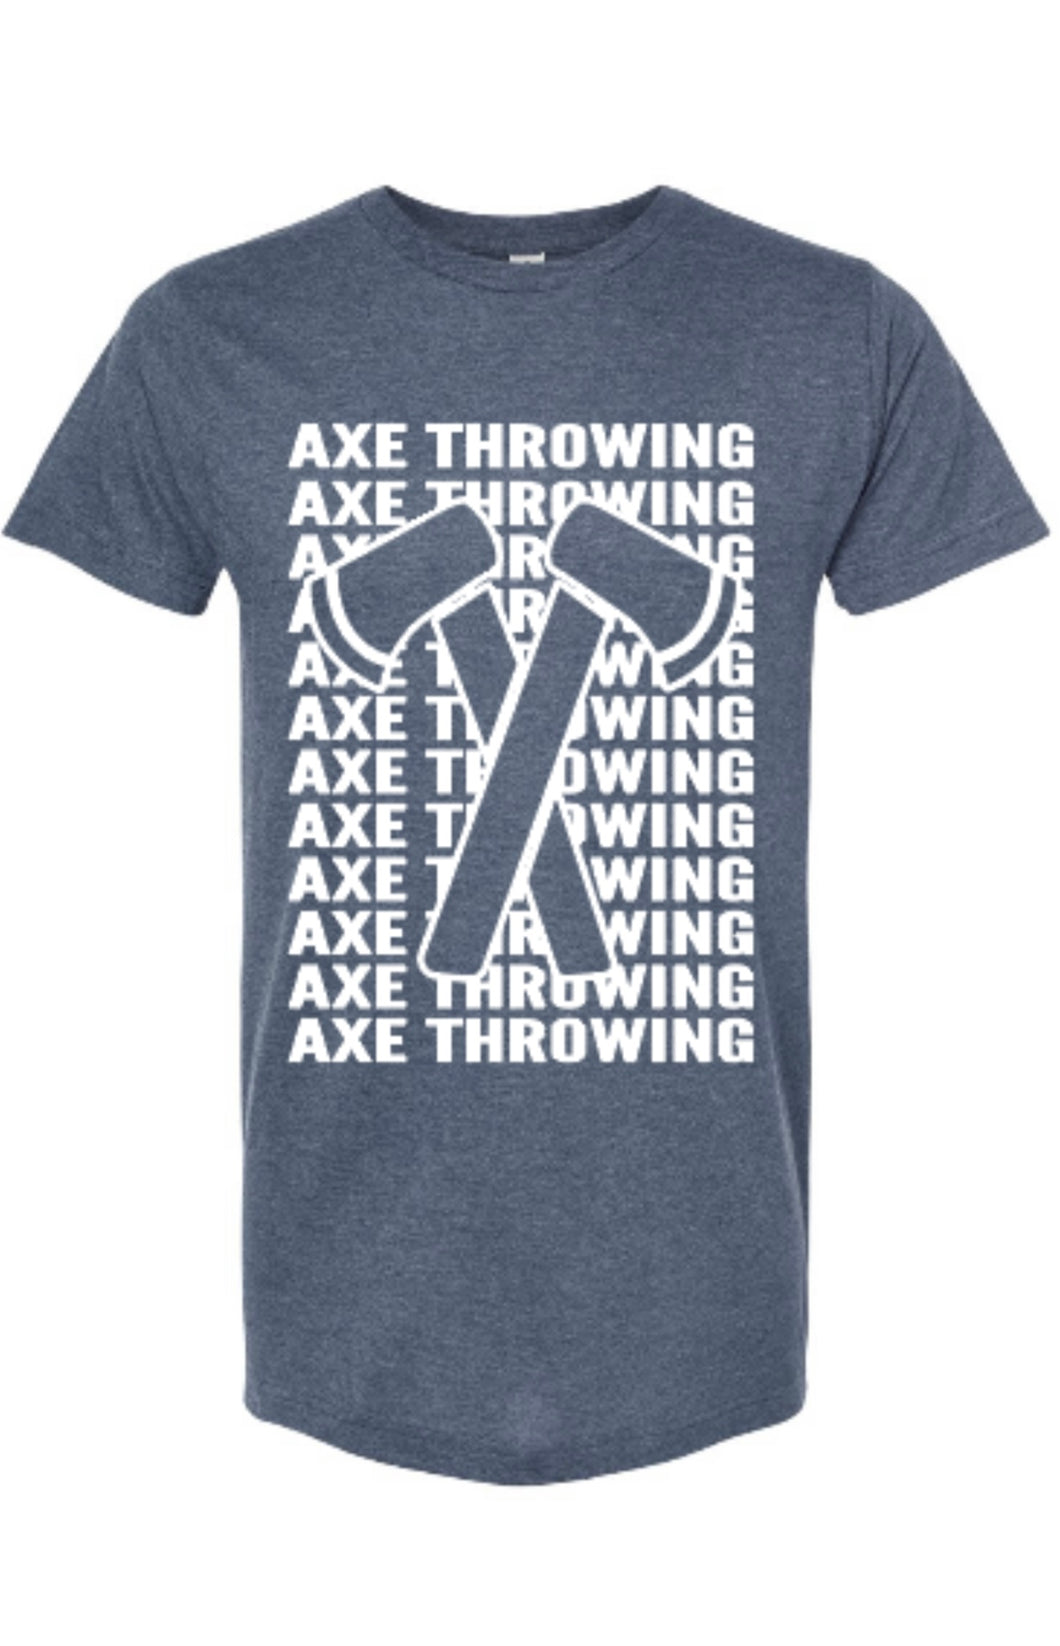 Axe Throwing-Axe Throwing-Axe Throwing-Axe Throwing